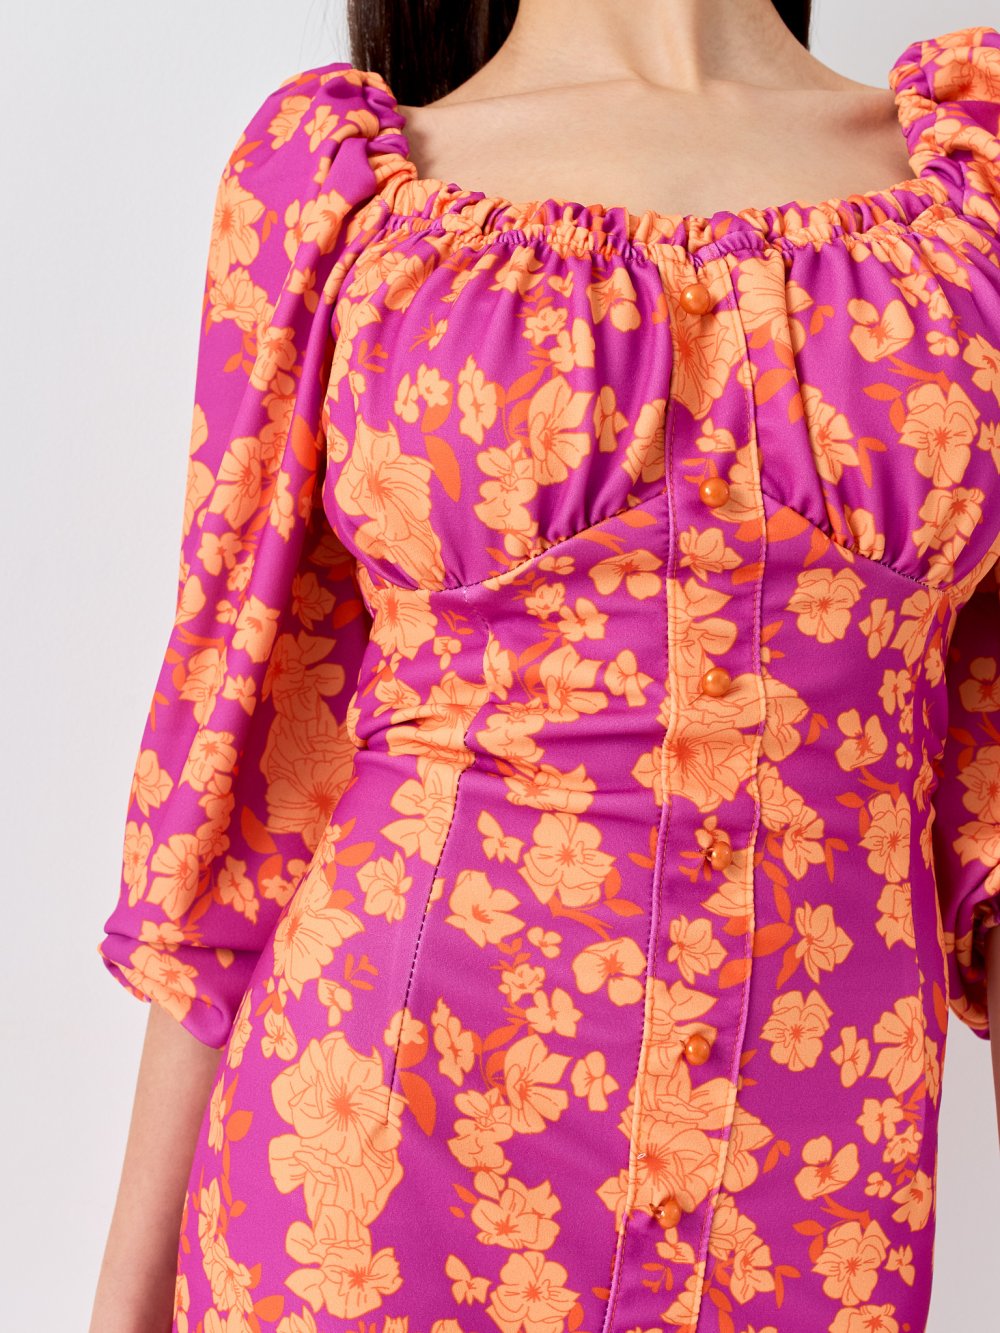 Fialovo-oranžové kvetované šaty Sabin